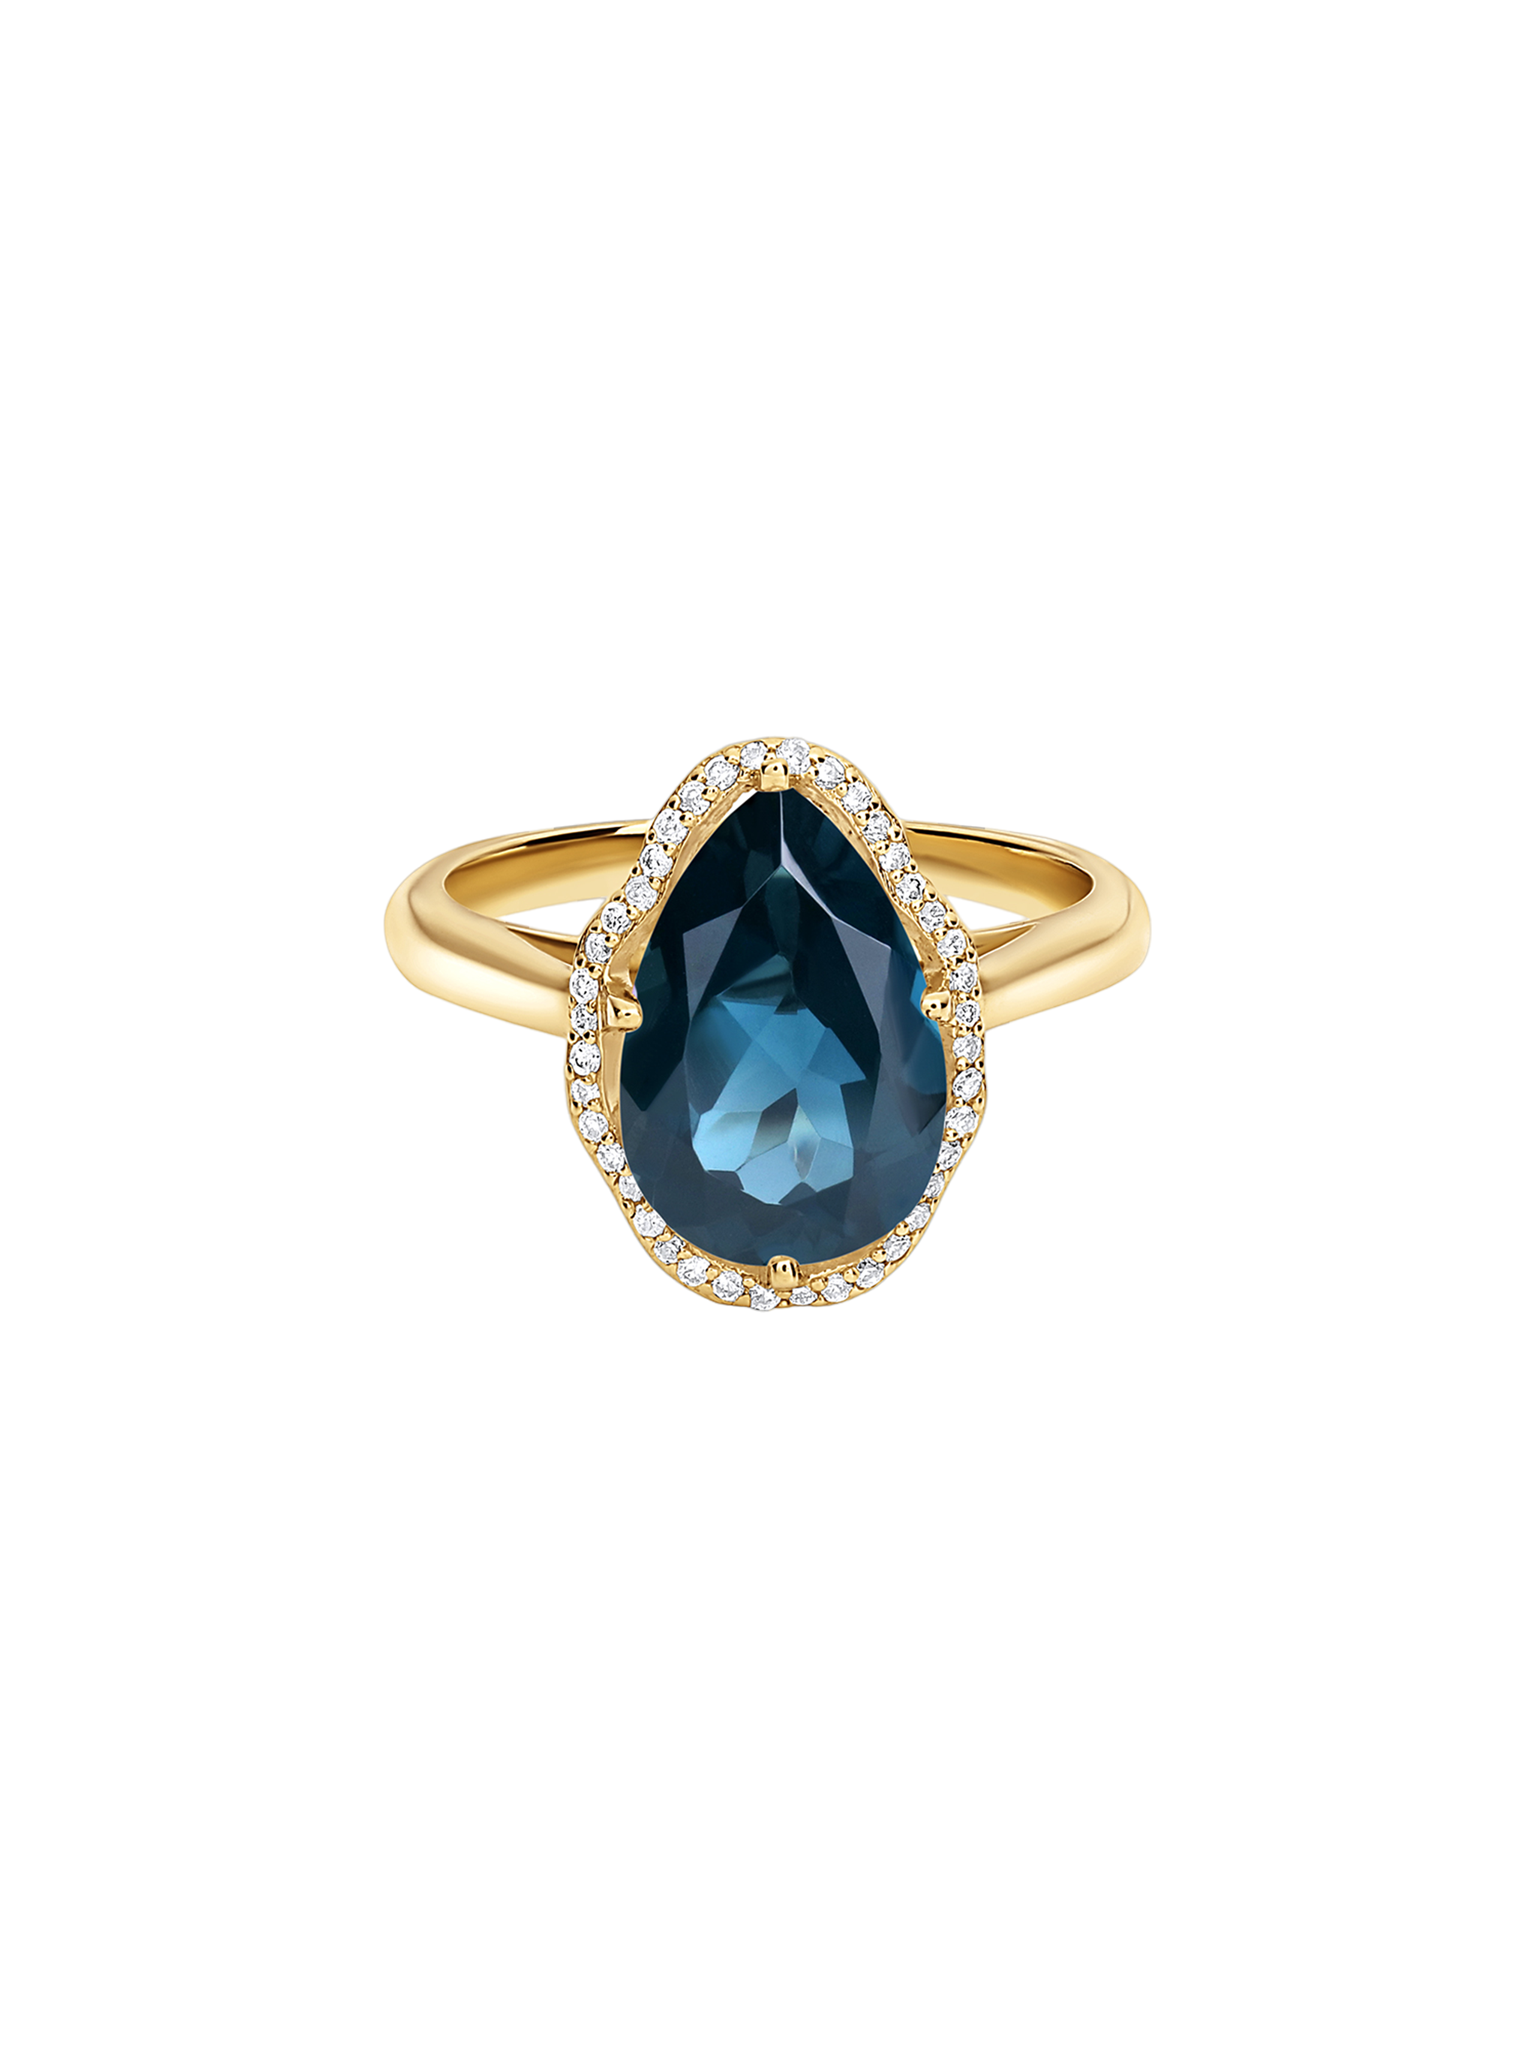 Glow ring london blue topaz with diamonds